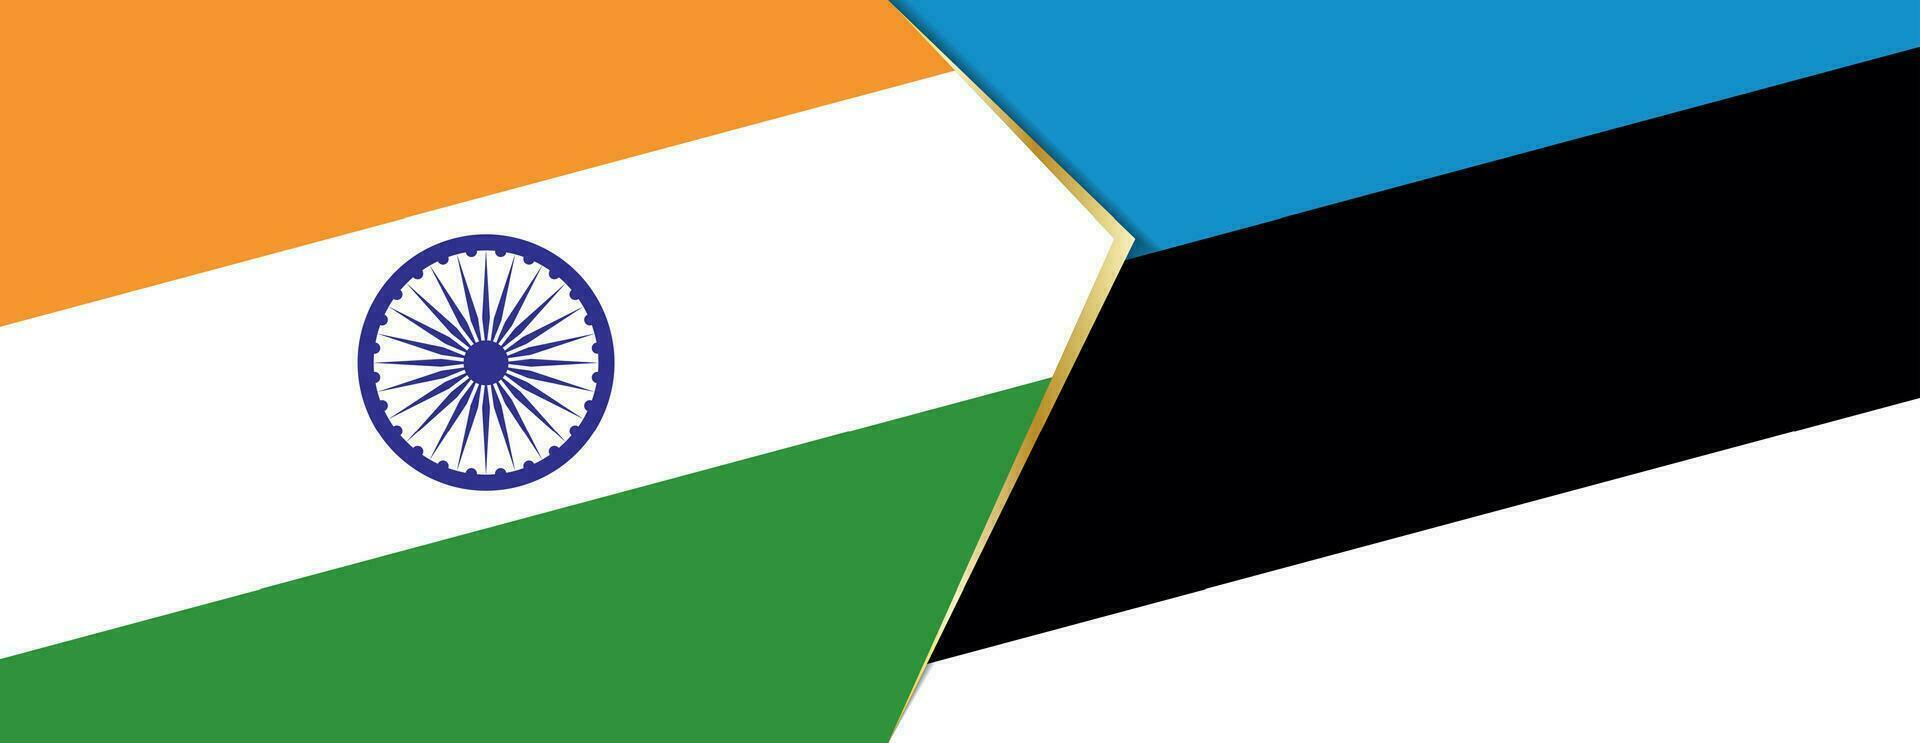 India y Estonia banderas, dos vector banderas